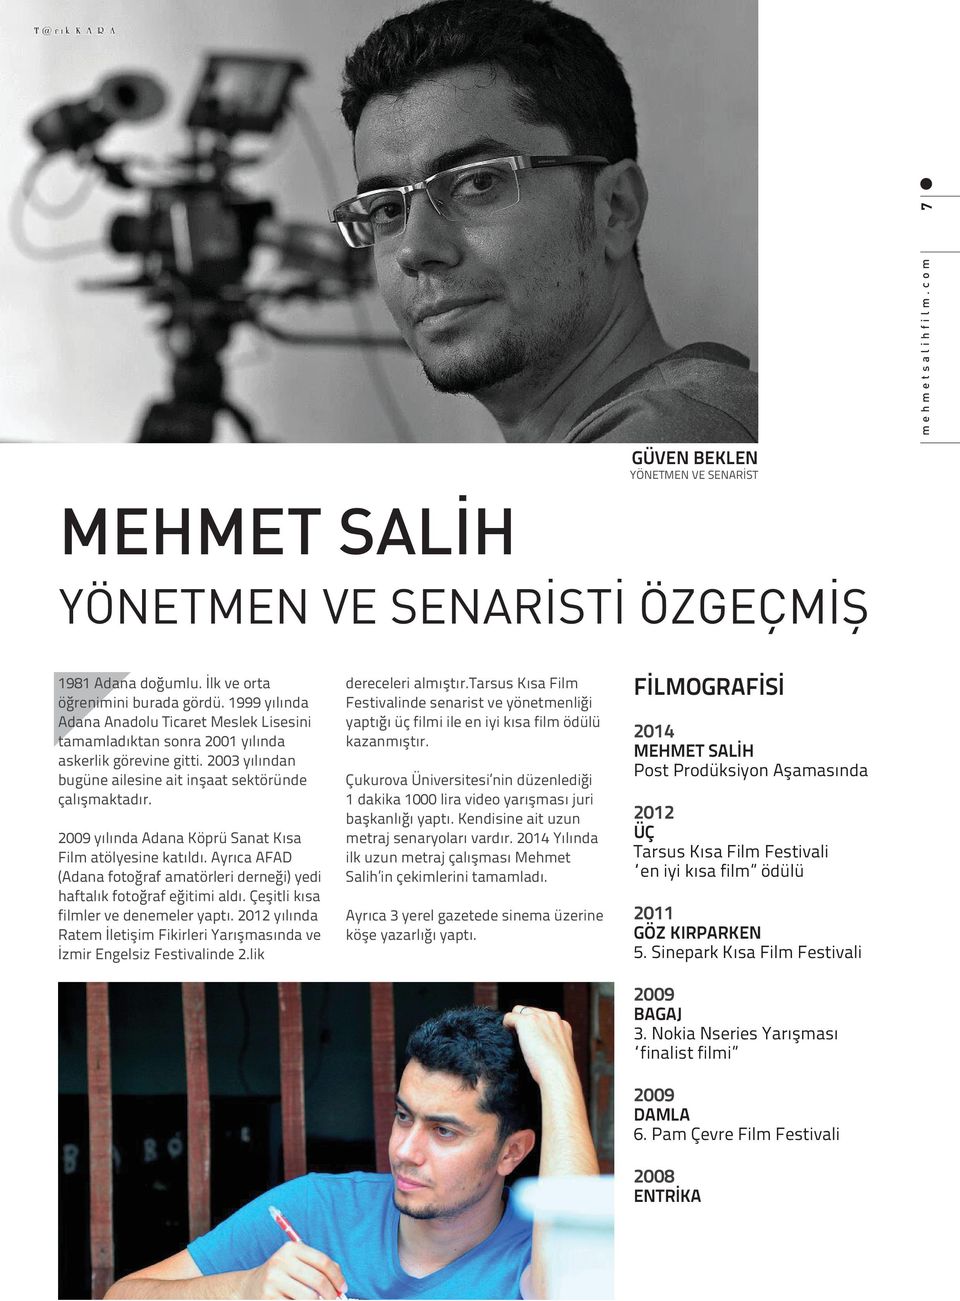 2009 yılında Adana Köprü Sanat Kısa Film atölyesine katıldı. Ayrıca AFAD (Adana fotoğraf amatörleri derneği) yedi haftalık fotoğraf eğitimi aldı. Çeşitli kısa filmler ve denemeler yaptı.